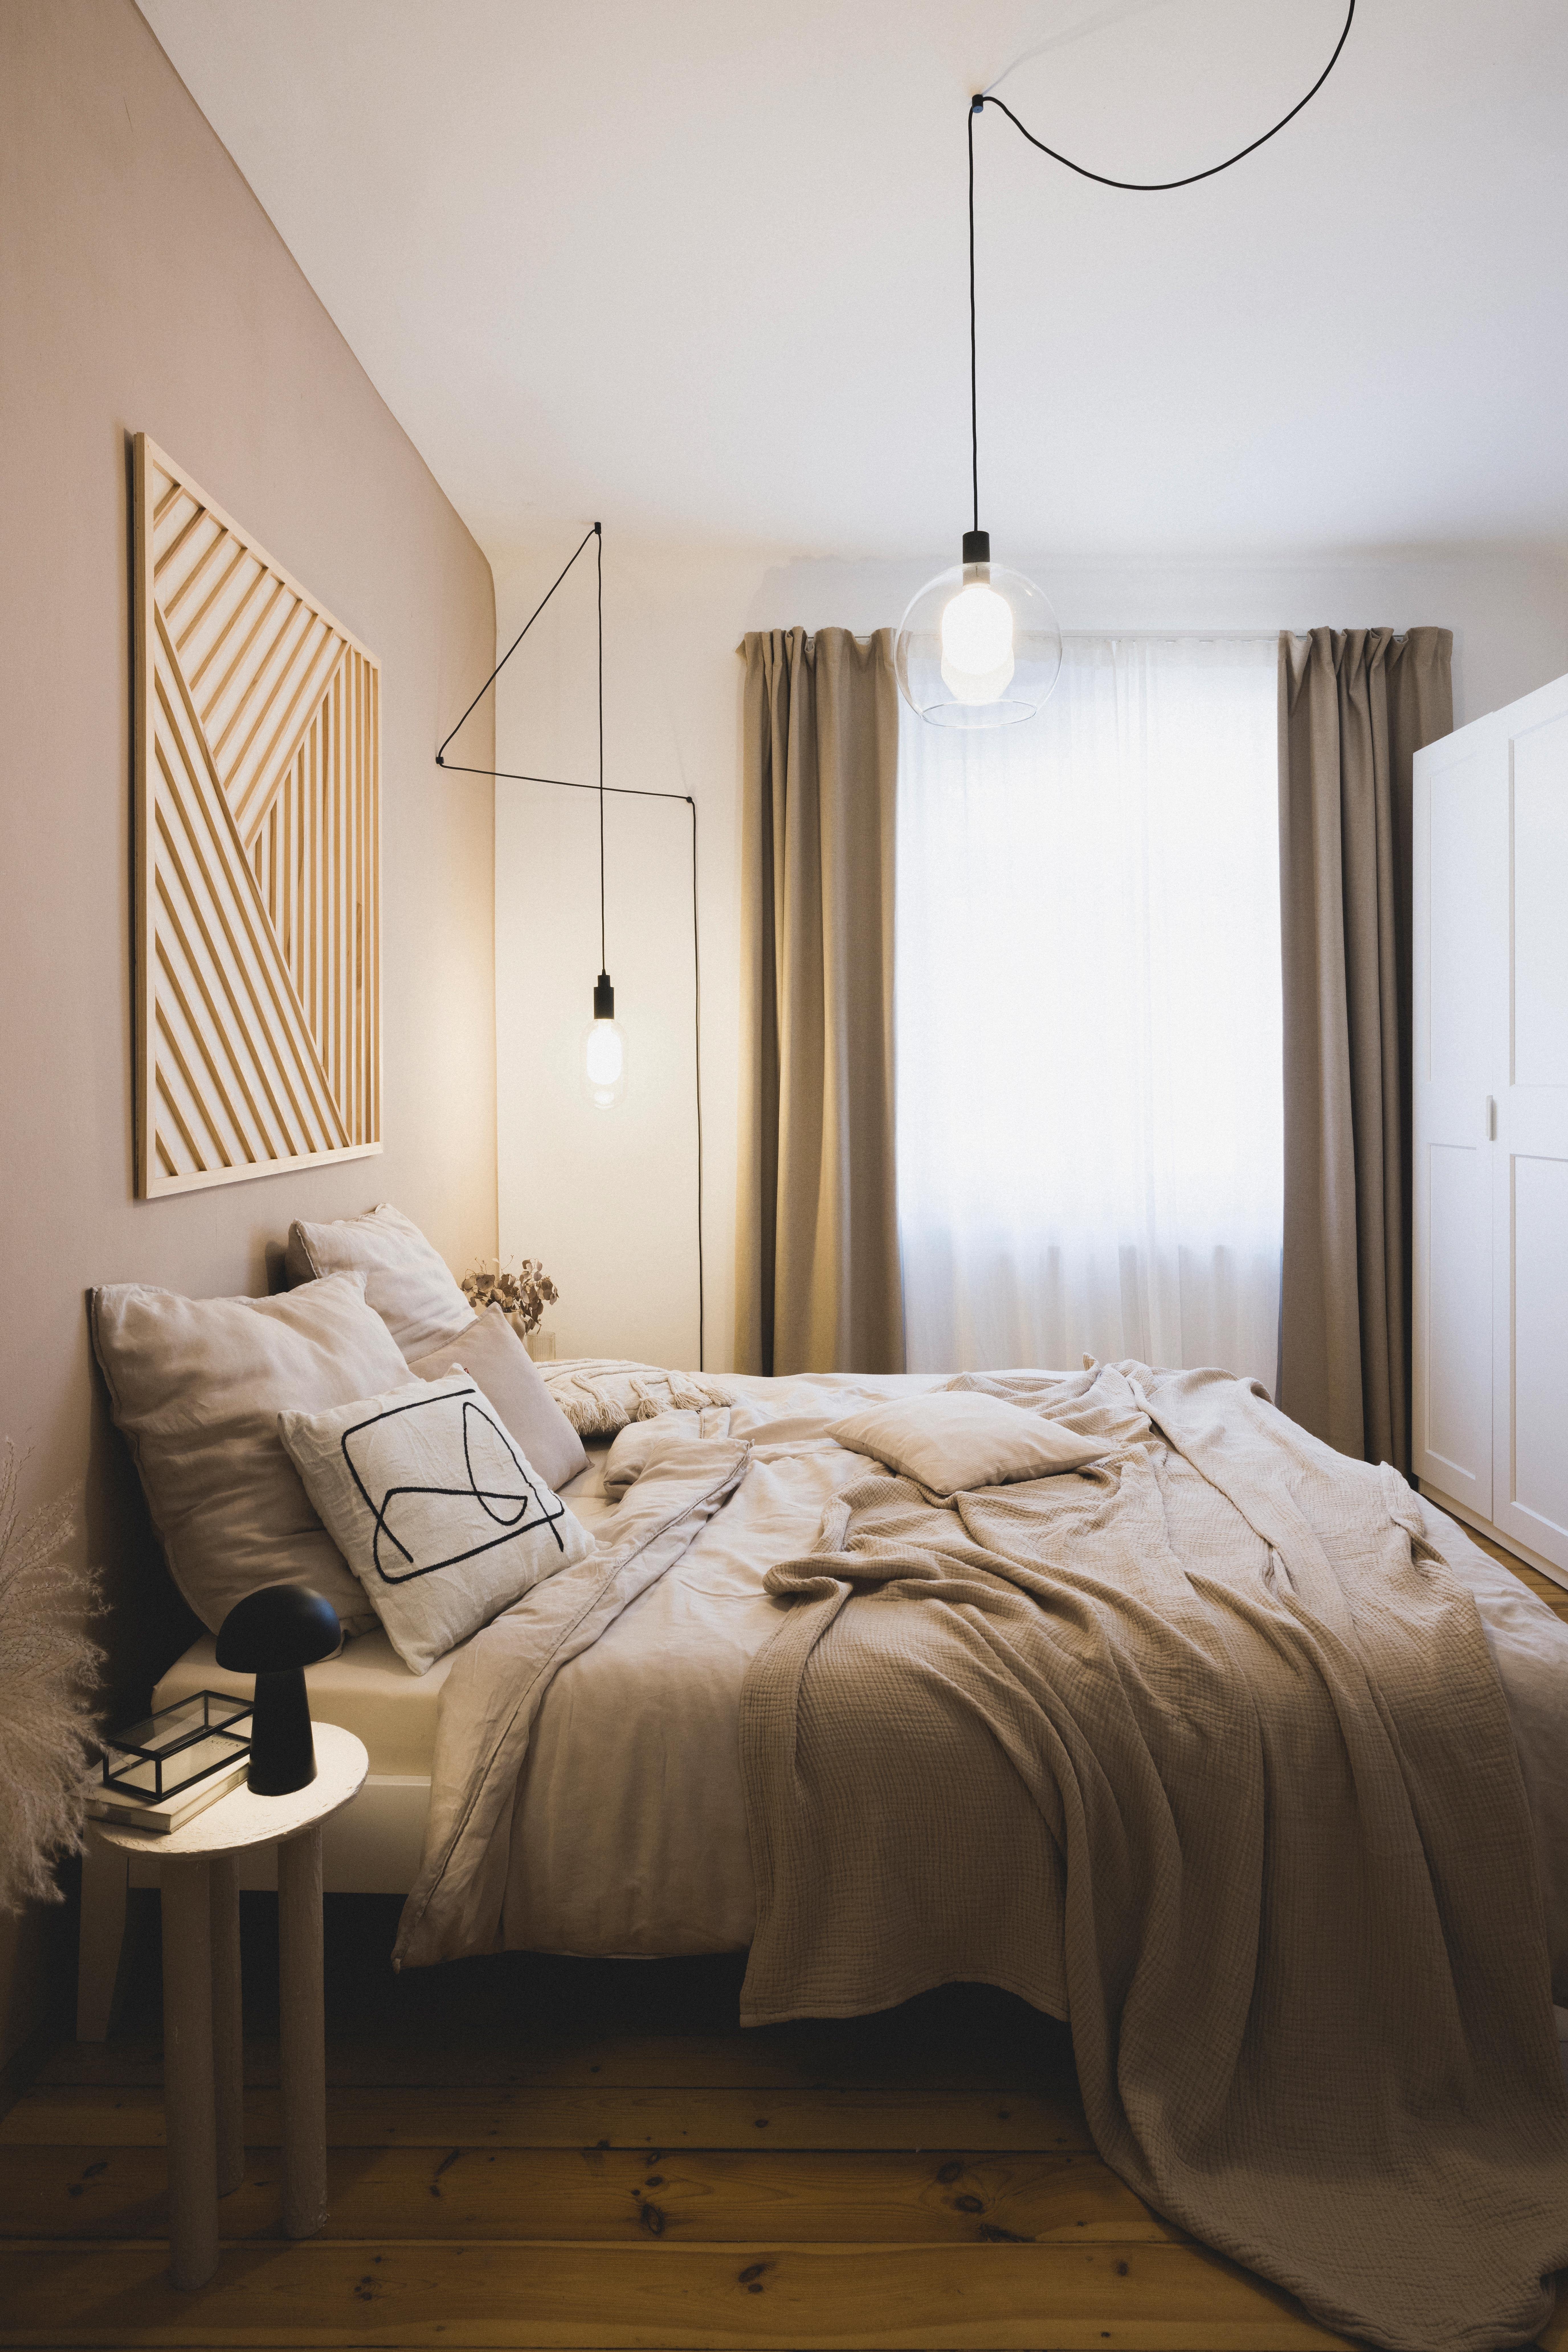 Zur Sonntags-Gemütlichkeit mal ein Schlafzimmer-Bild mit ein paar neuen DIY's ;)

Foto: ©Maria Bayer | www.mariabayer.de